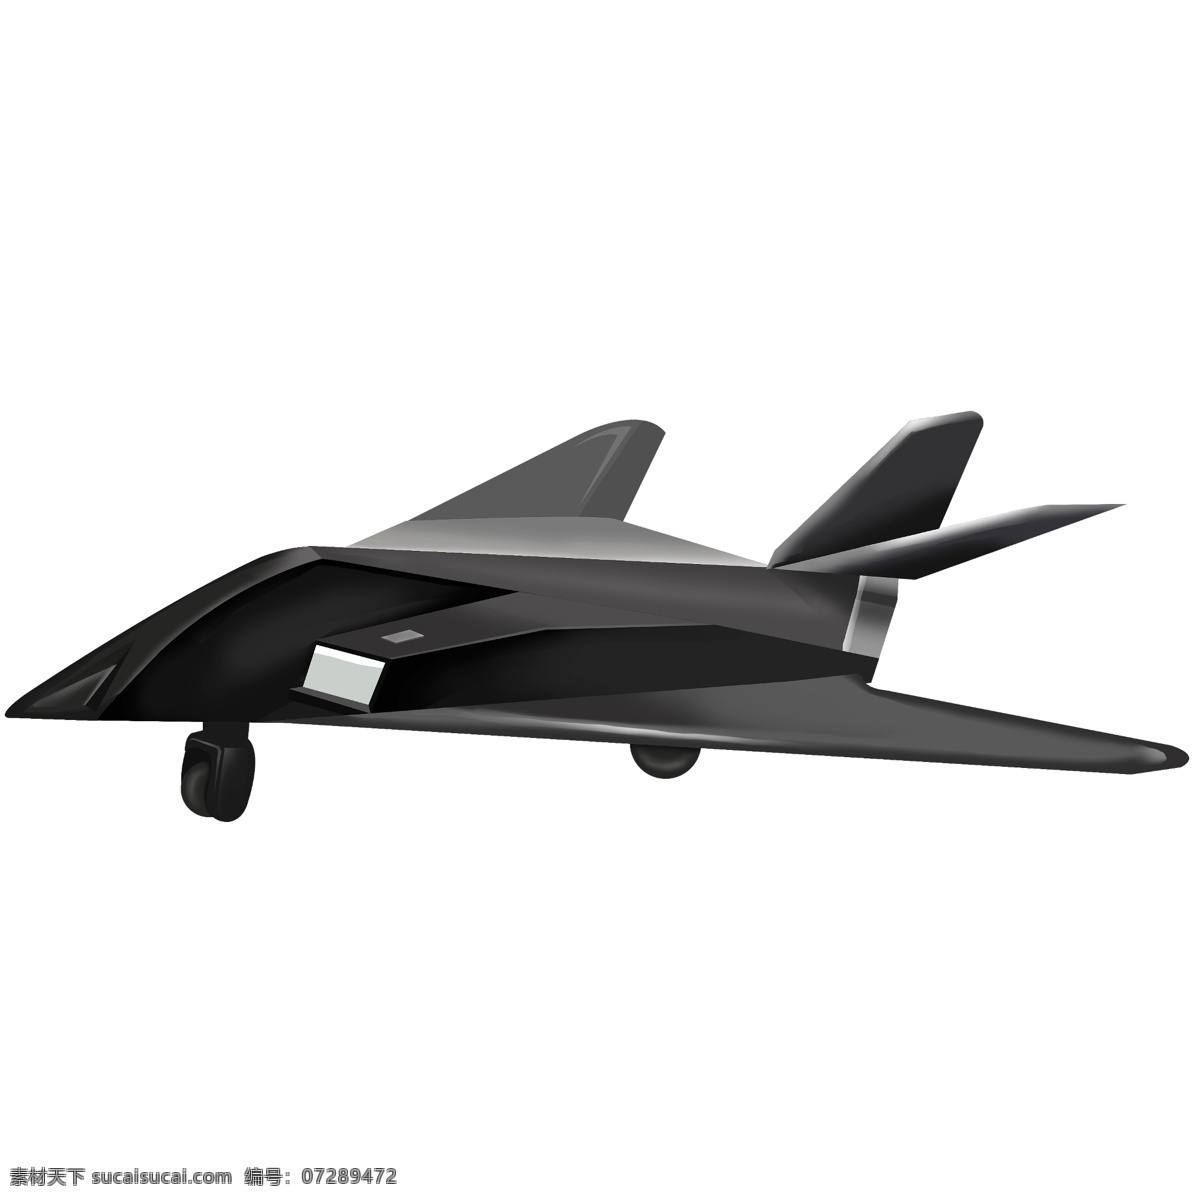 高端 黑色 质感 战斗机 质感黑色 黑色战斗机 高科技 现代化装备 飞机装饰插画 交通工具 军事装备 军事飞机 创意飞机 战争 武器